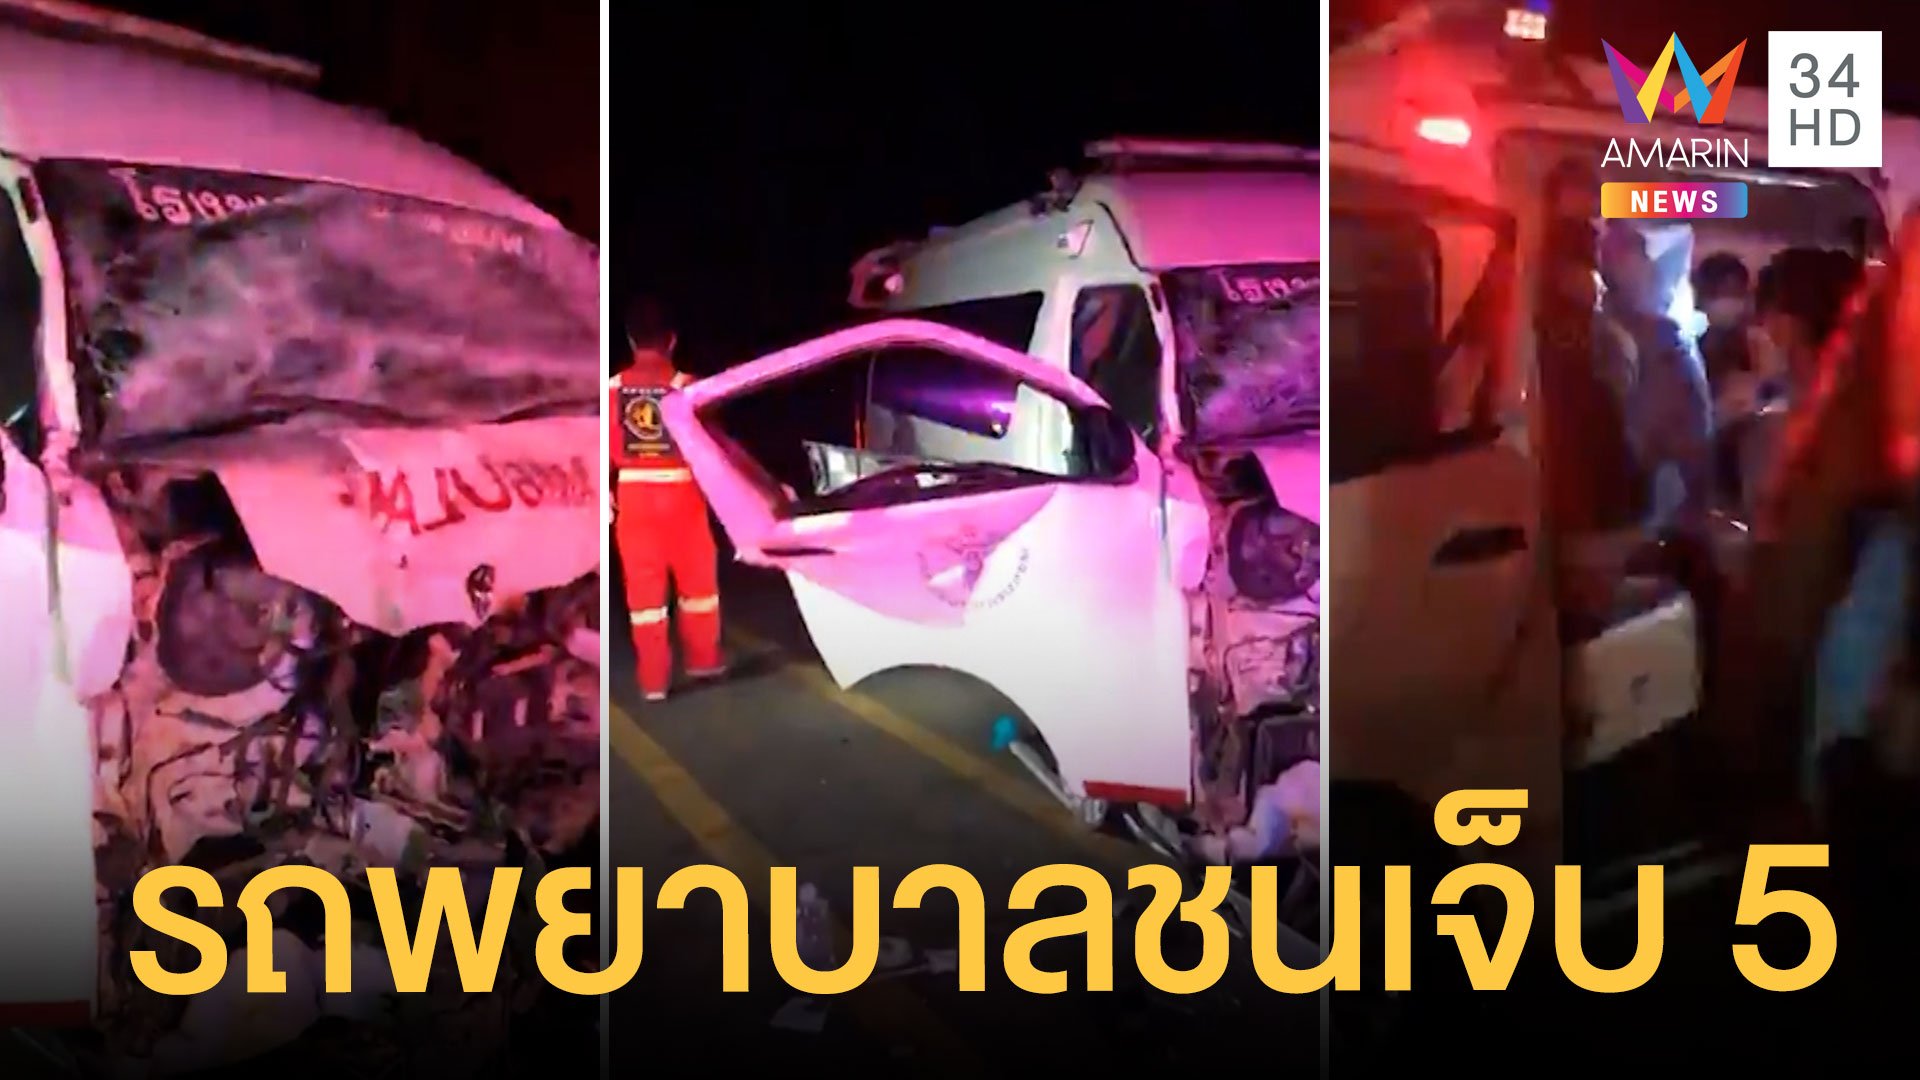 รถบรรทุกประสานงารถพยาบาล เจ็บ 5 คน | ข่าวเที่ยงอมรินทร์ | 15 ม.ค. 65 | AMARIN TVHD34